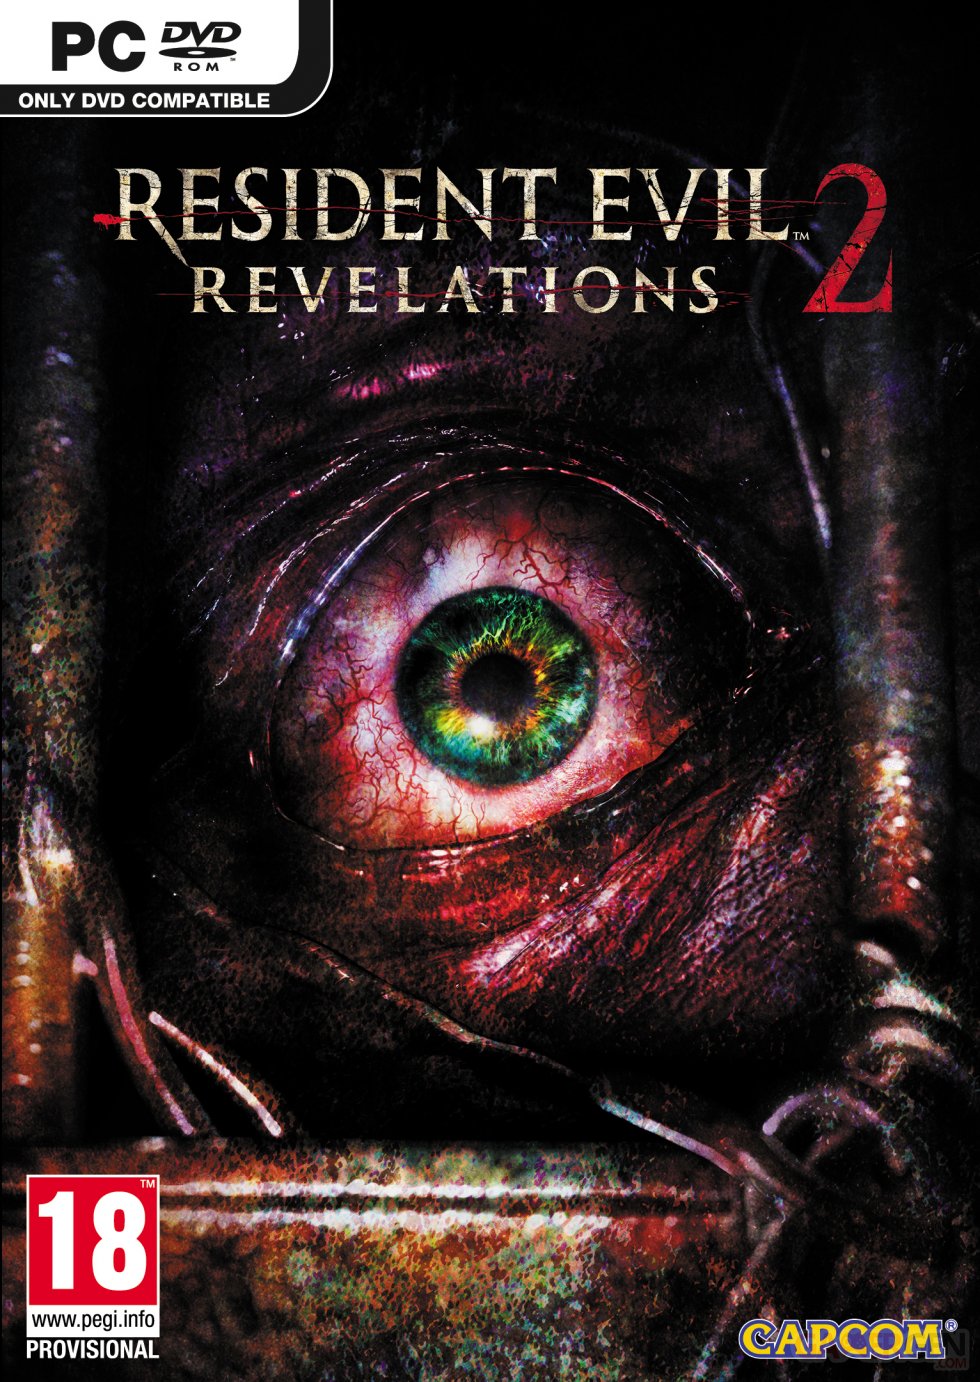 Resident-Evil-Revelations-2-jaquette-packshot-cover-PC